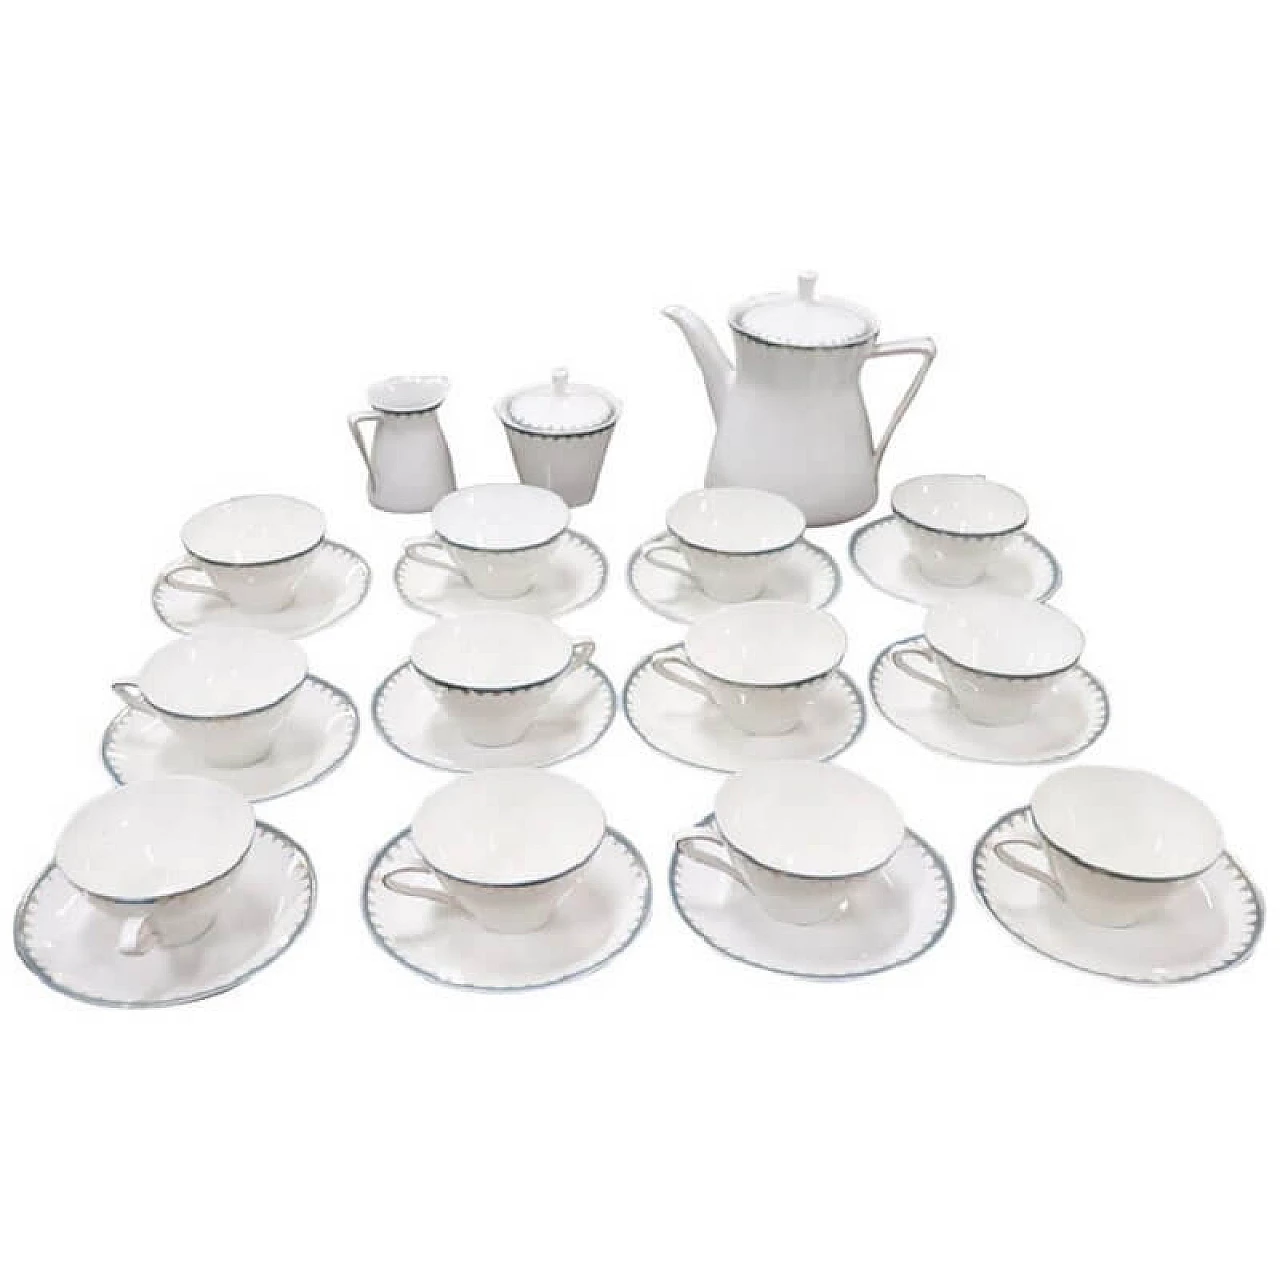 Tea set for 12 people made of porcelain, brand Bavaria 1082221